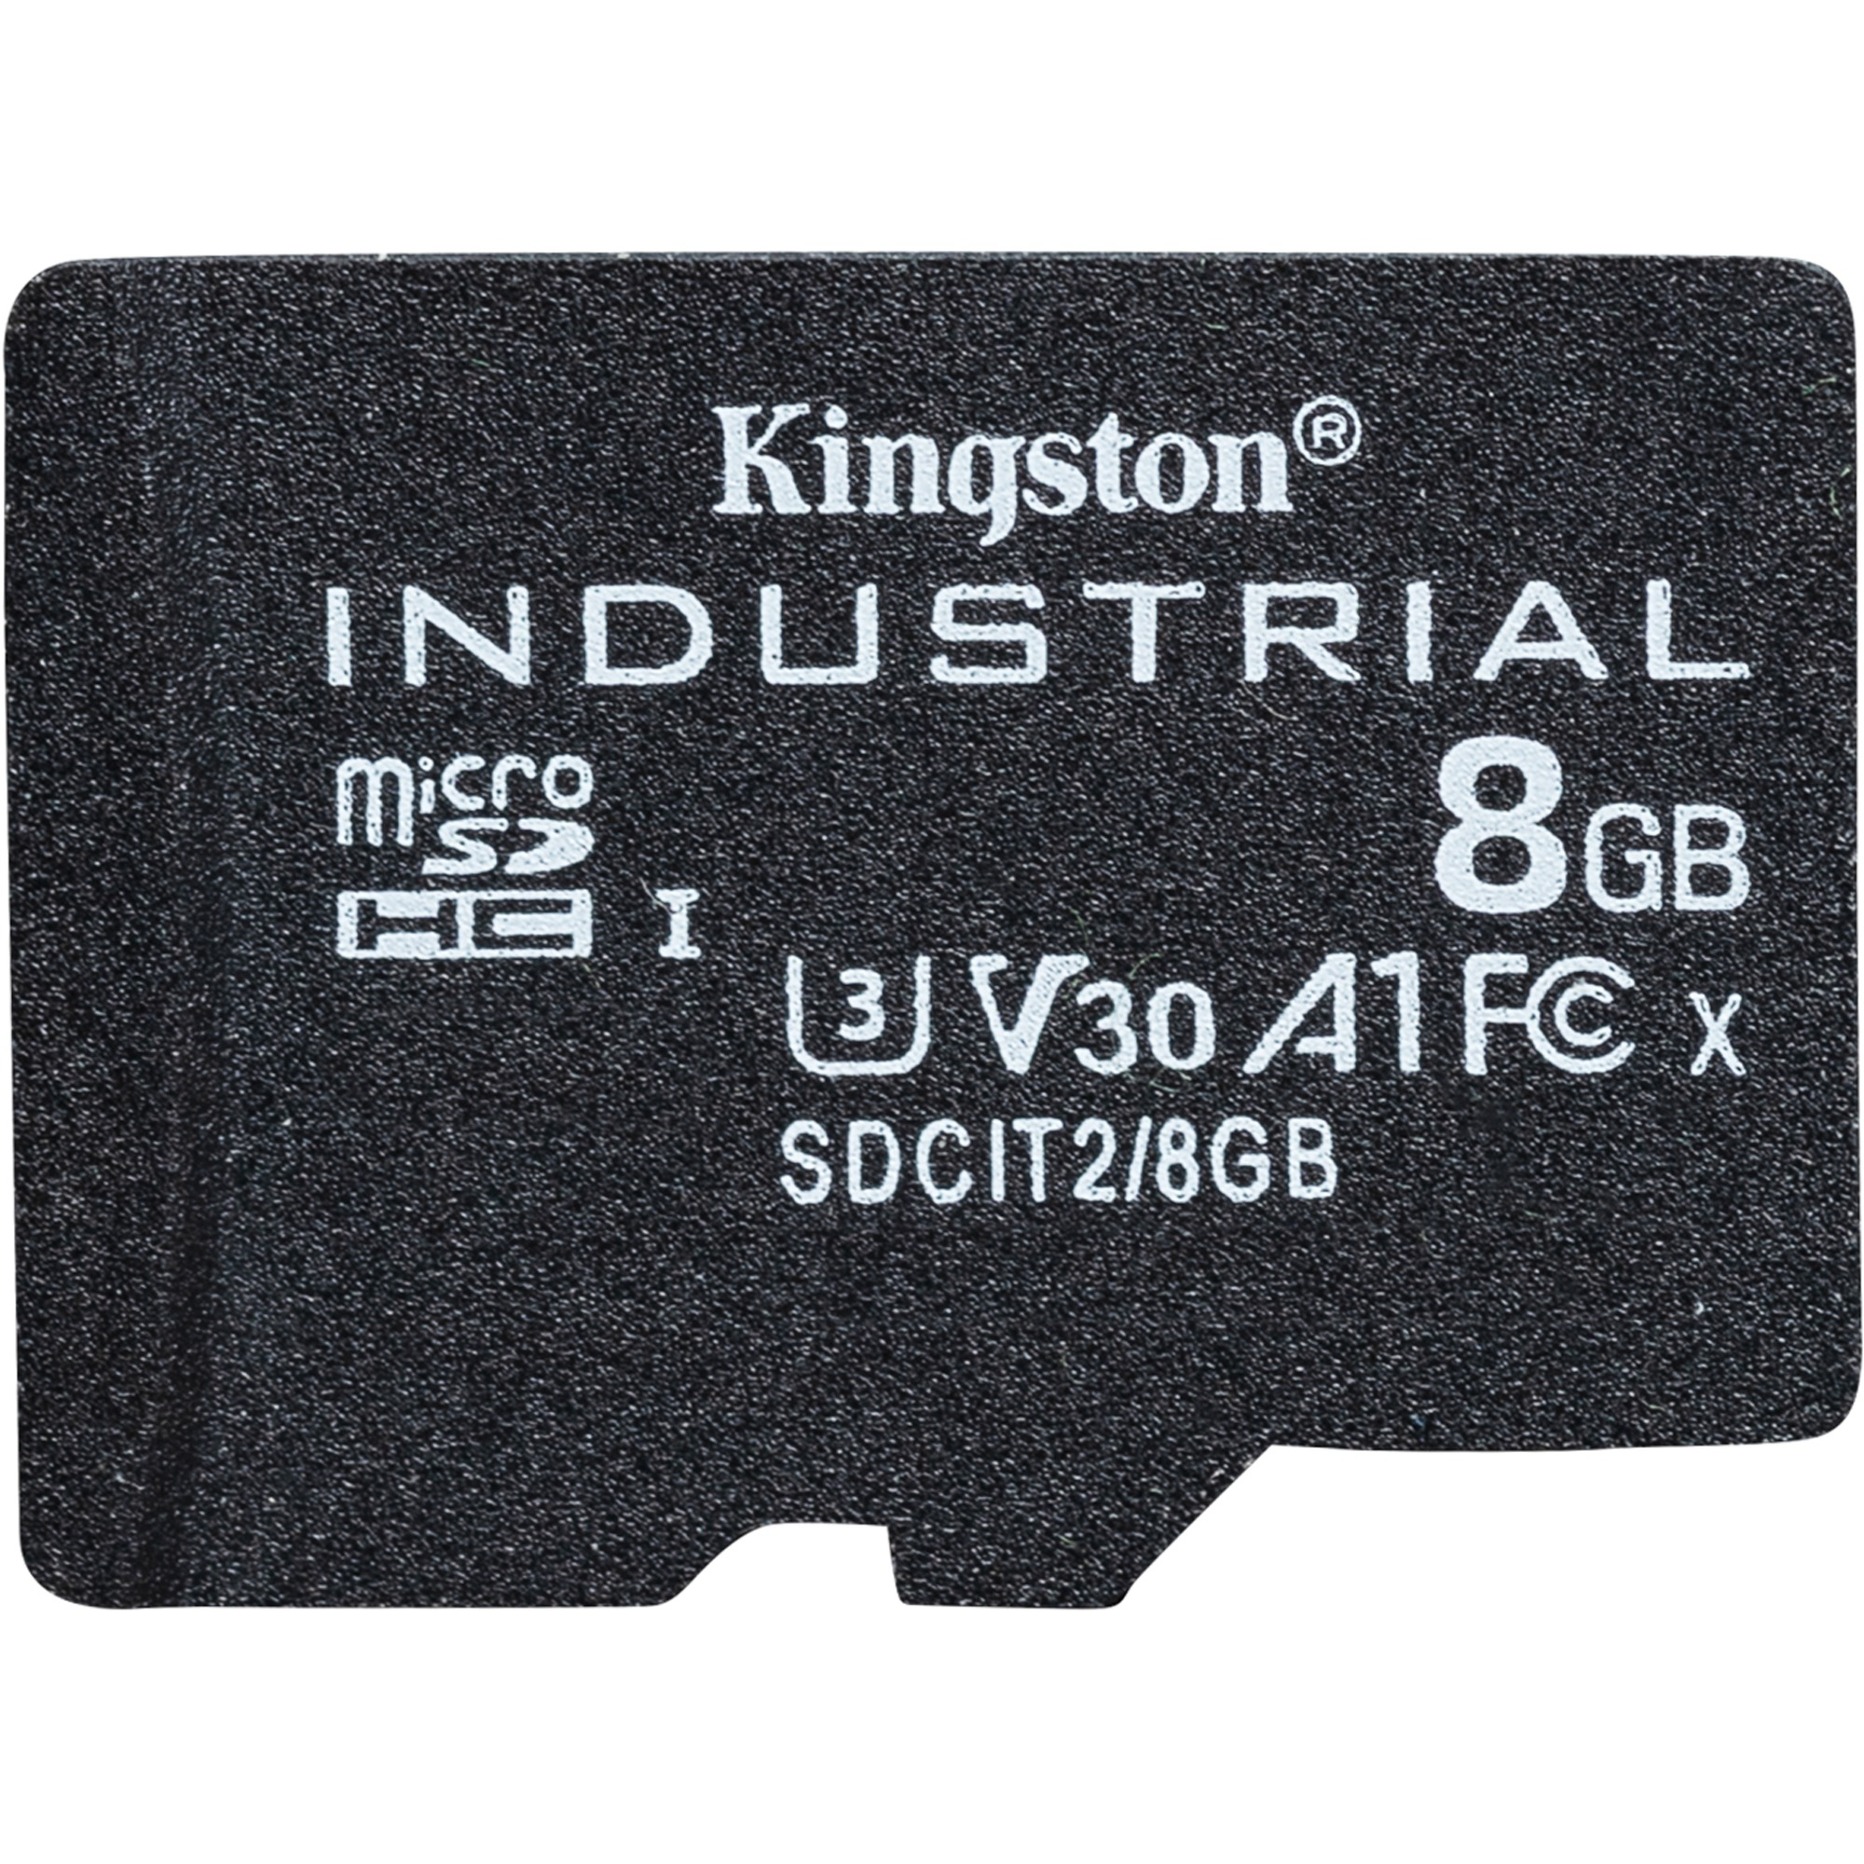 Image of Alternate - Industrial 8 GB microSDHC, Speicherkarte online einkaufen bei Alternate